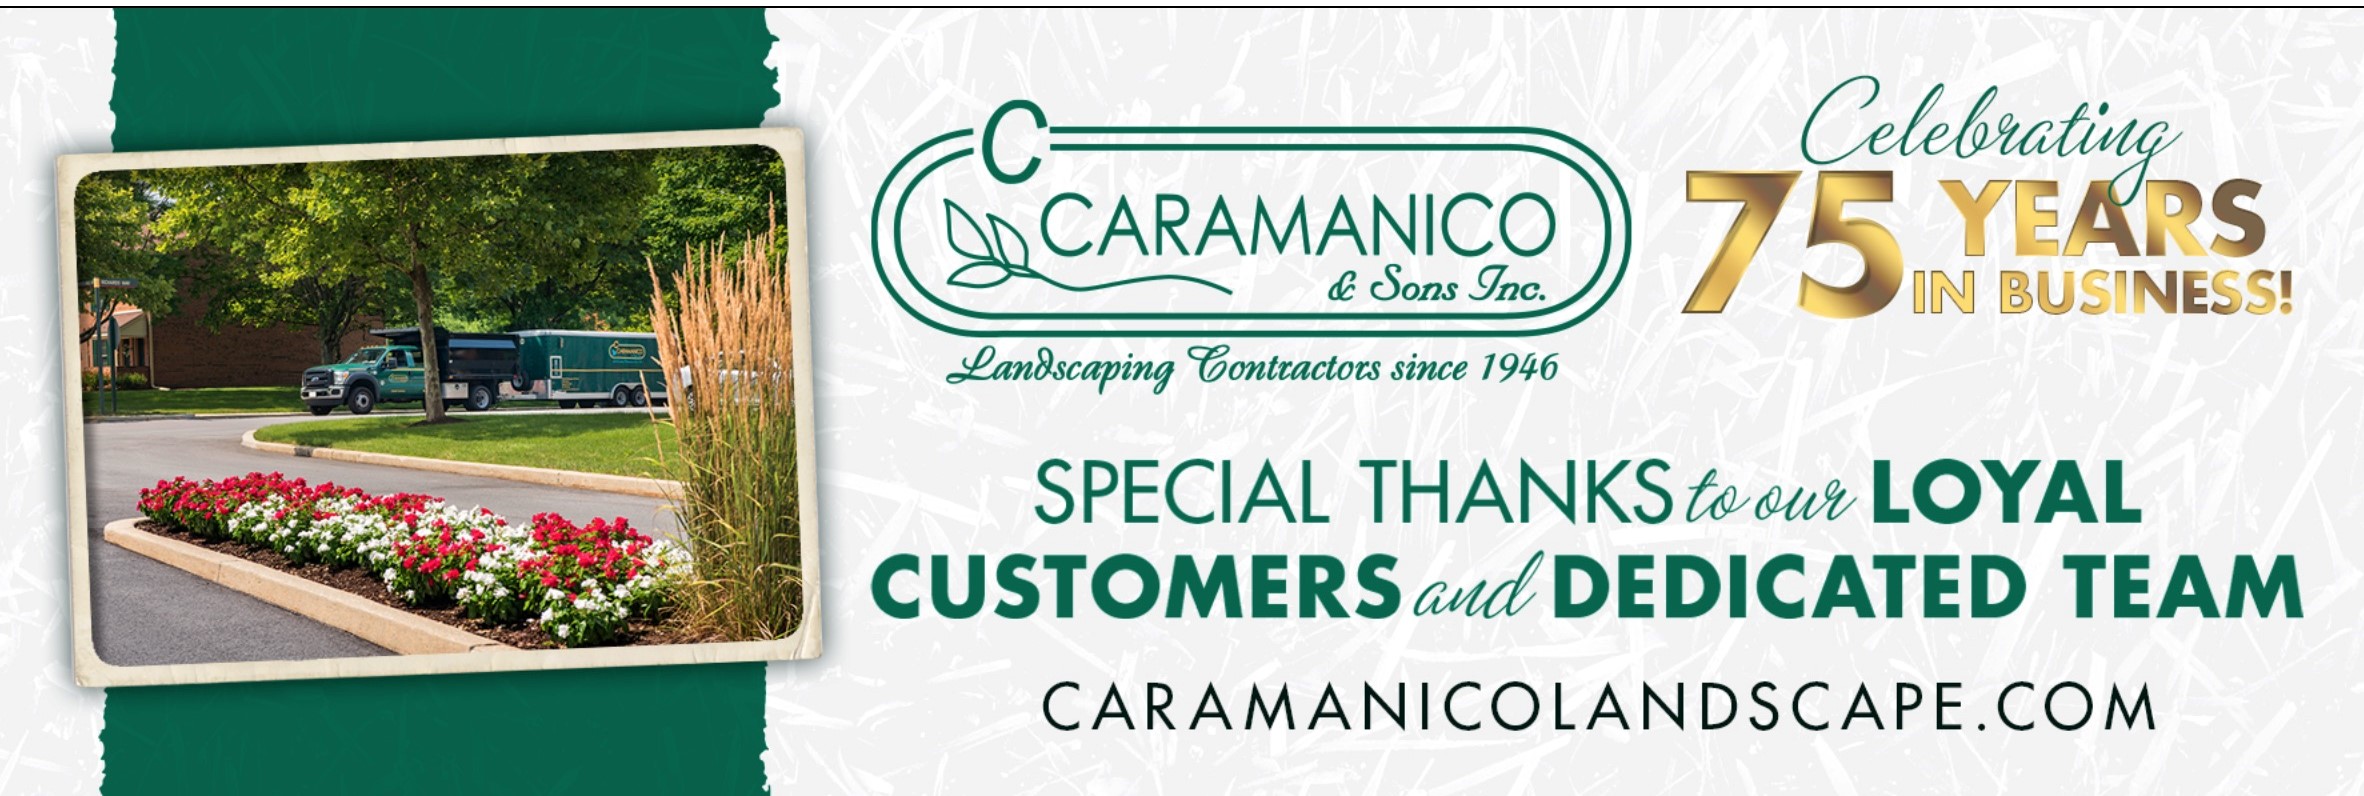 Caramanico 75 Years